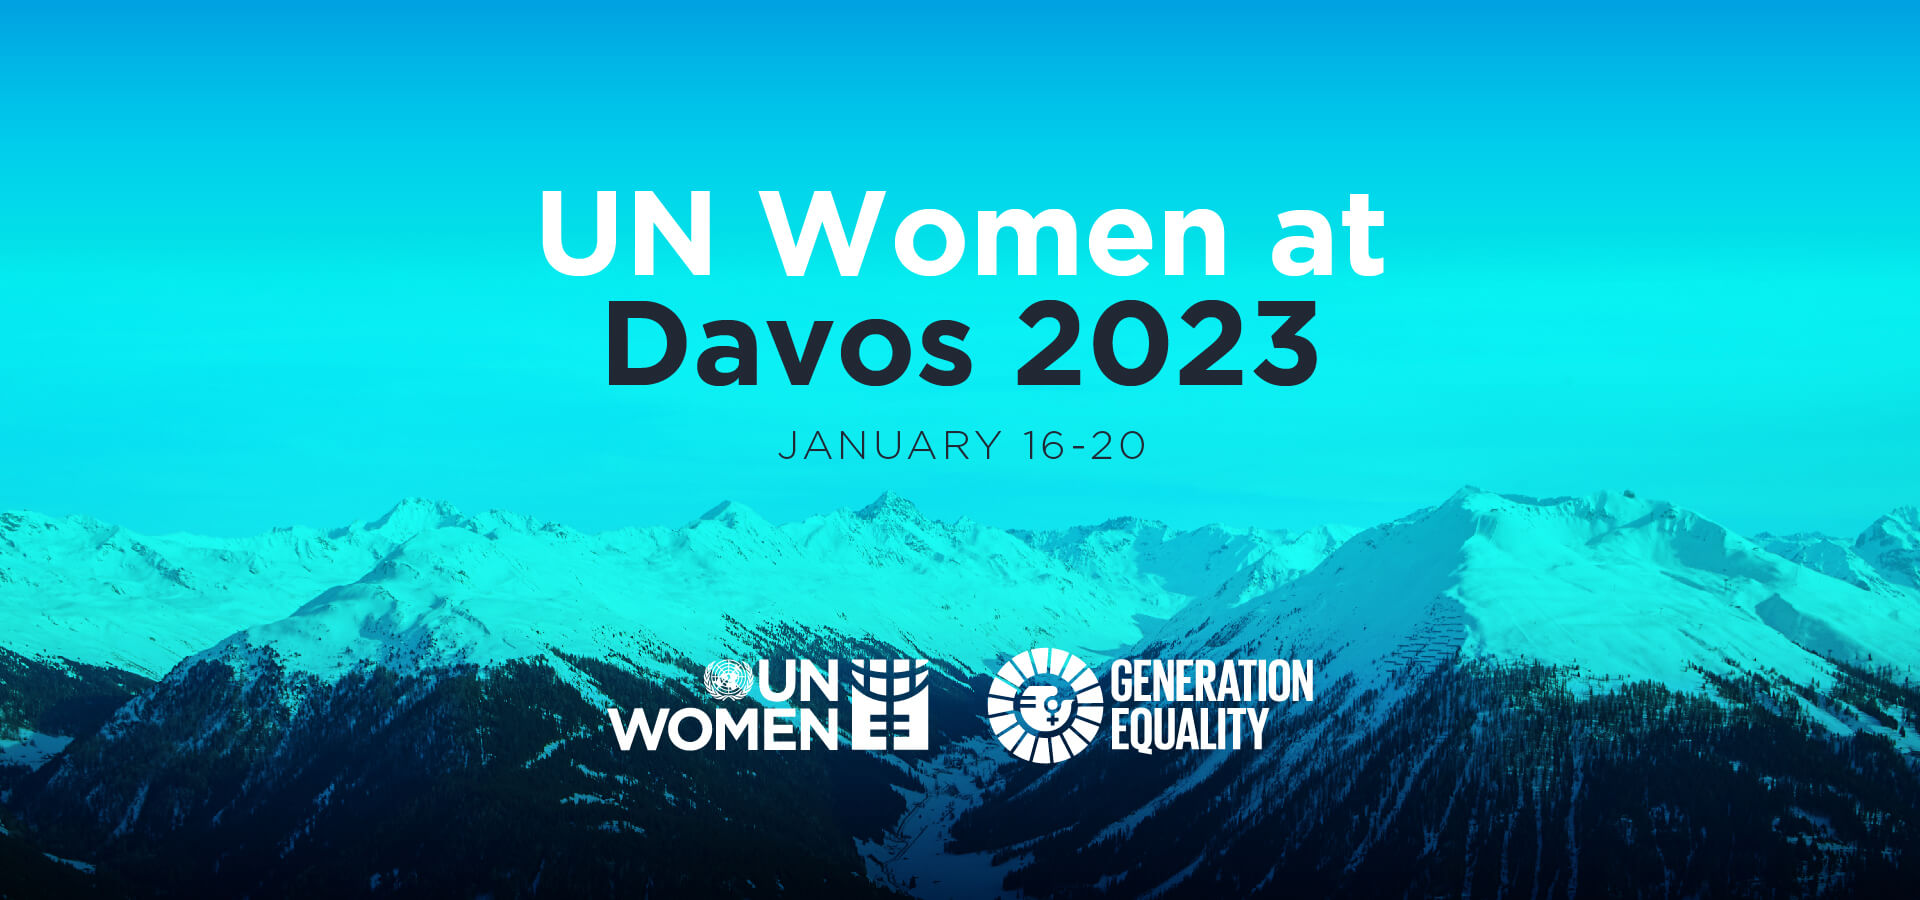 UN Women at Davos 2023